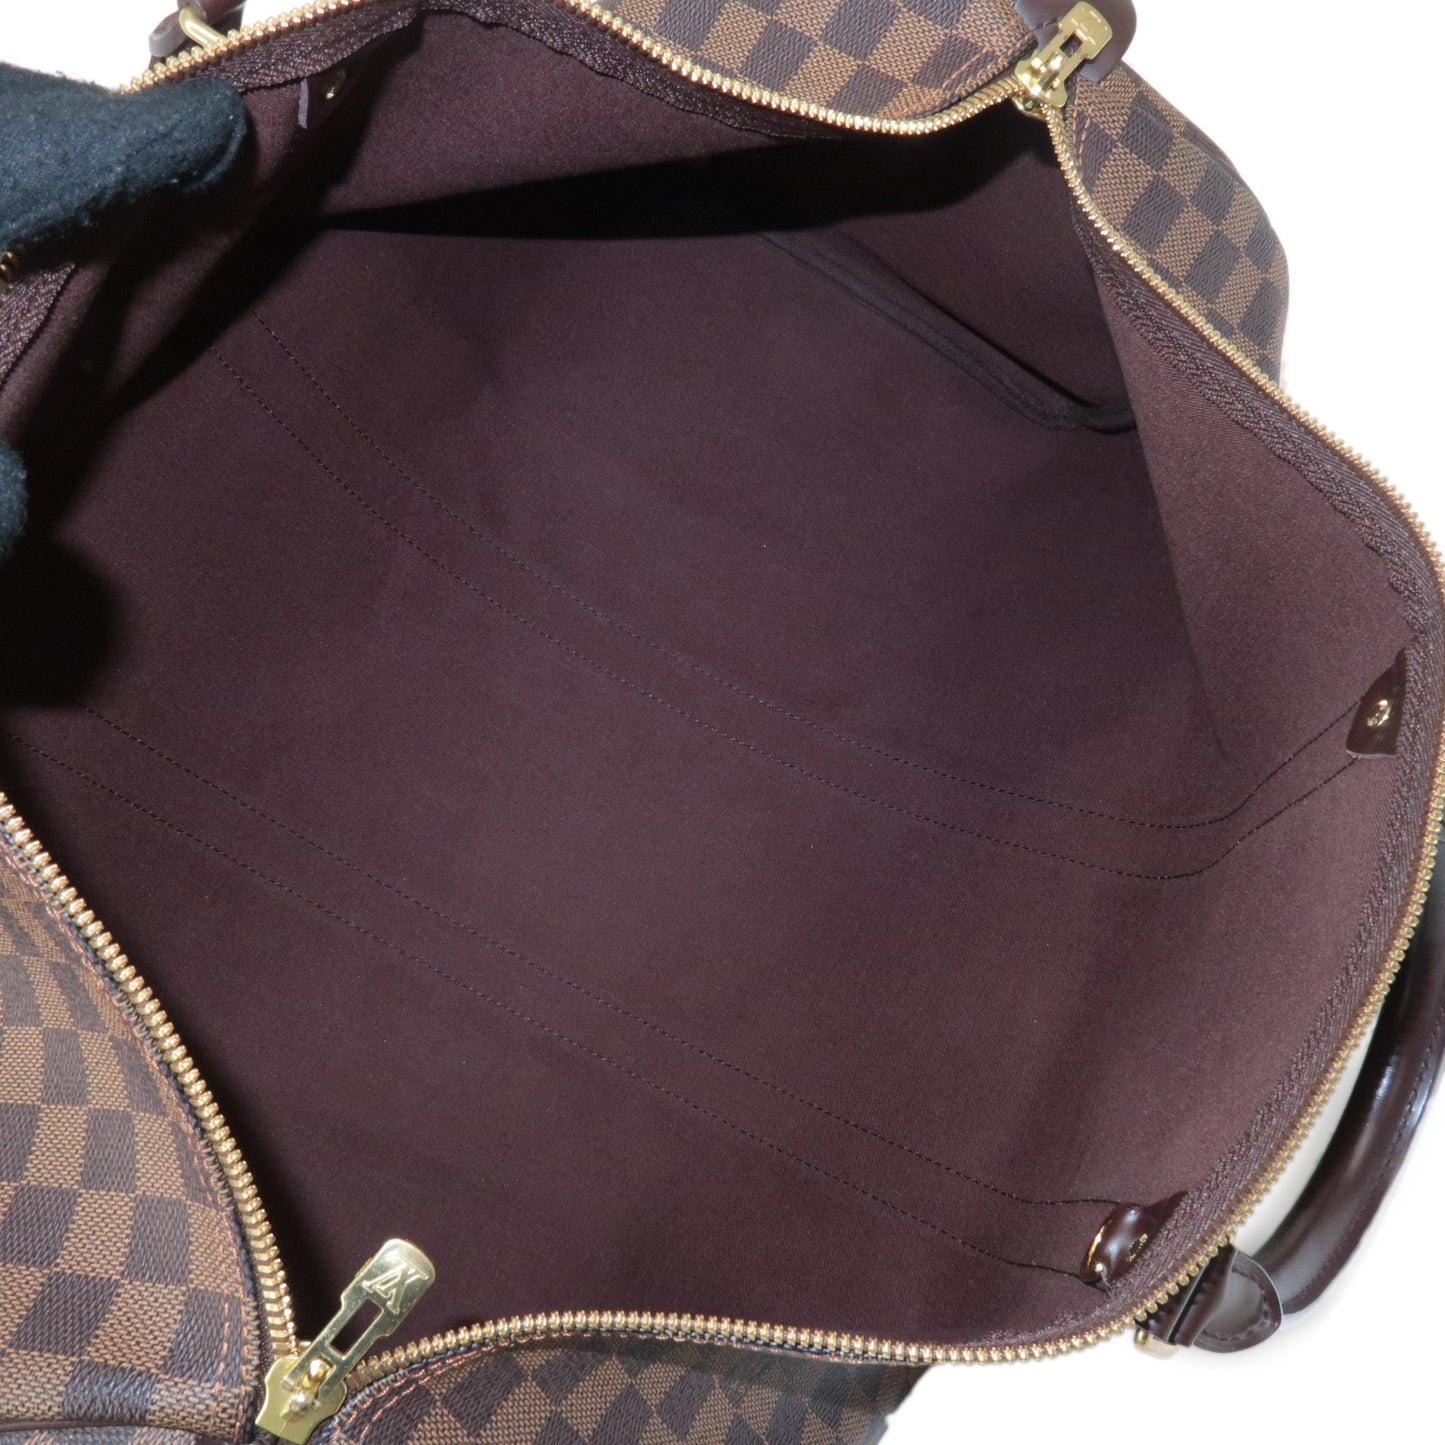 Louis Vuitton Damier Keep All 50 Boston Bag Brown N41427